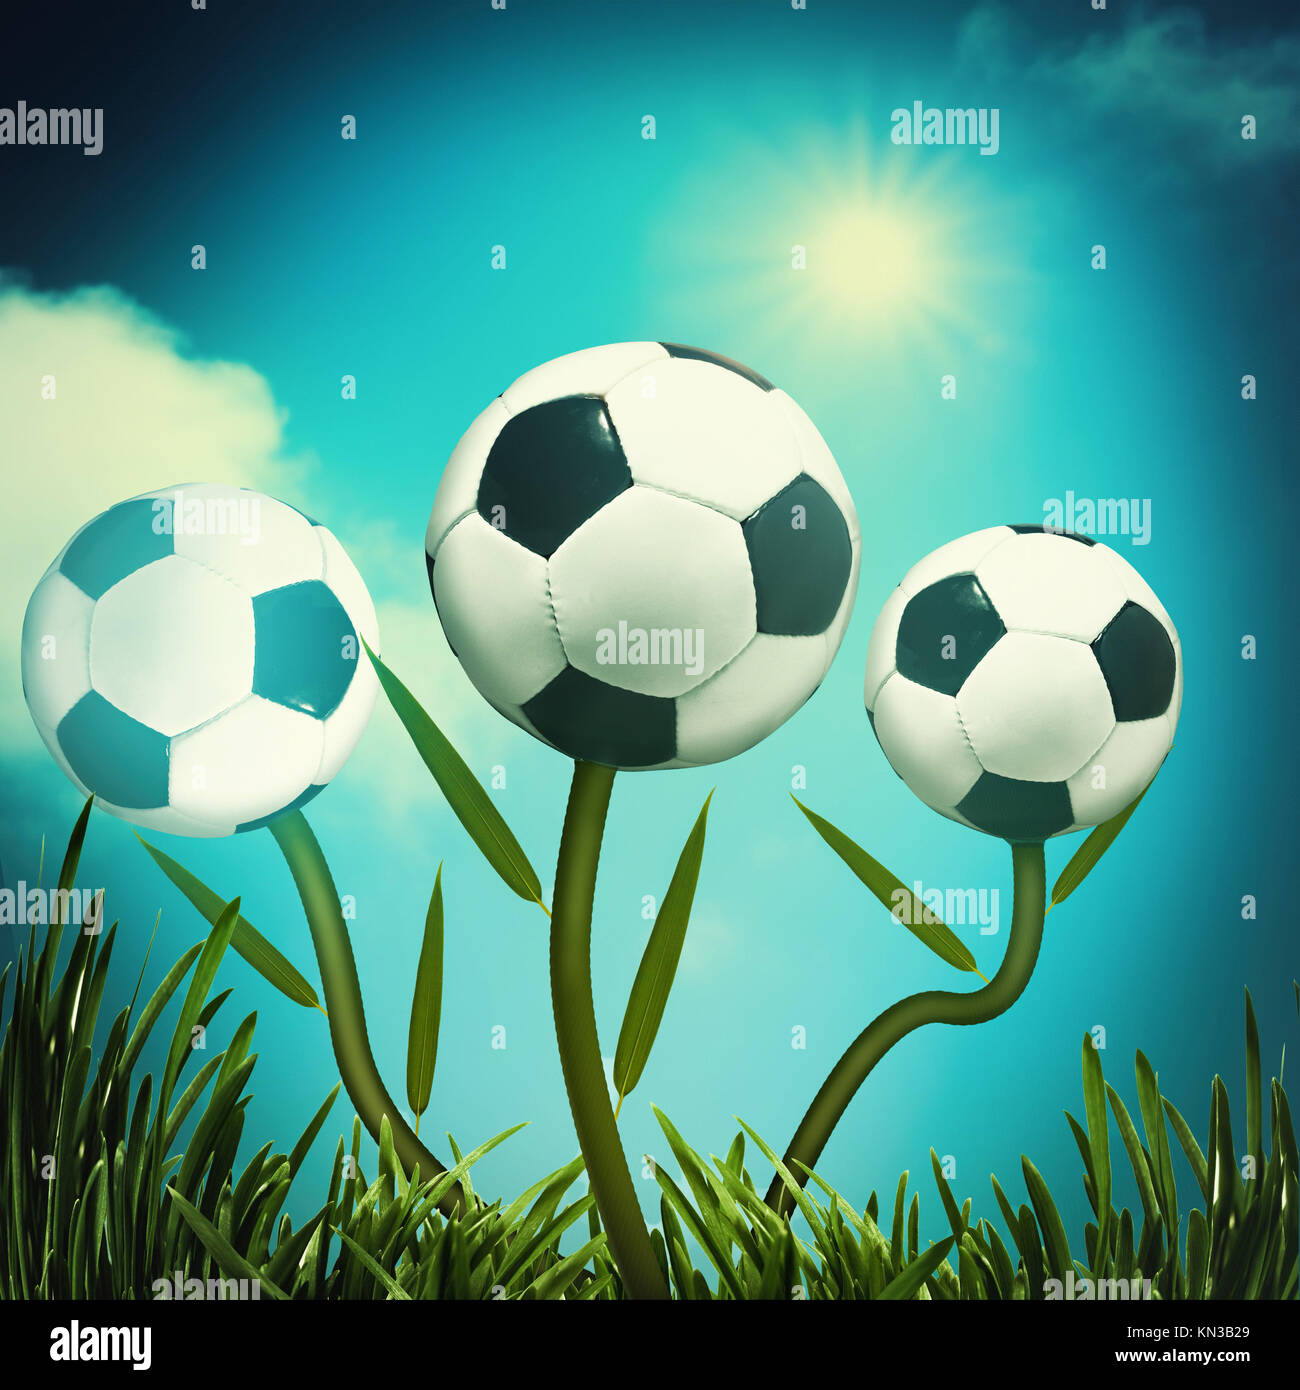 Lustig Fußball und Fußball Hintergründe für Ihr Design Stockfotografie -  Alamy